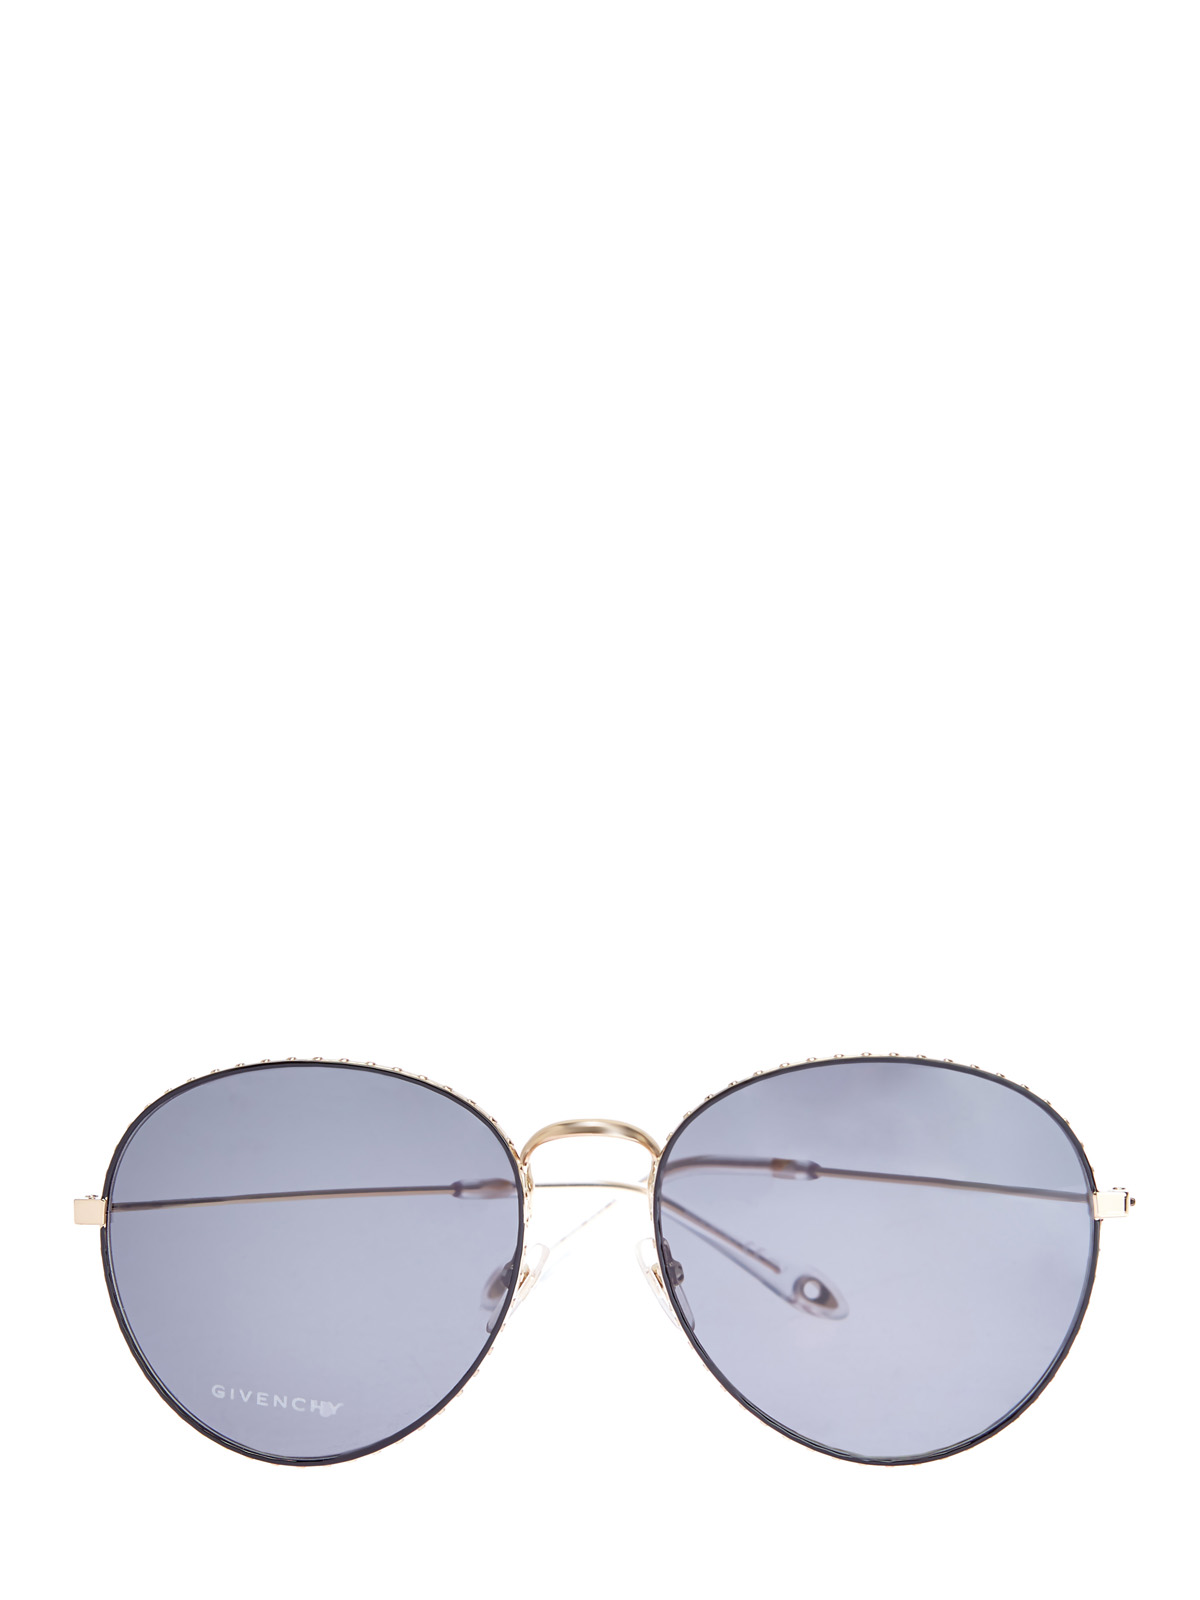 Очки-авиаторы с отделкой из металла золотистого цвета GIVENCHY (sunglasses), размер S;M;L - фото 1